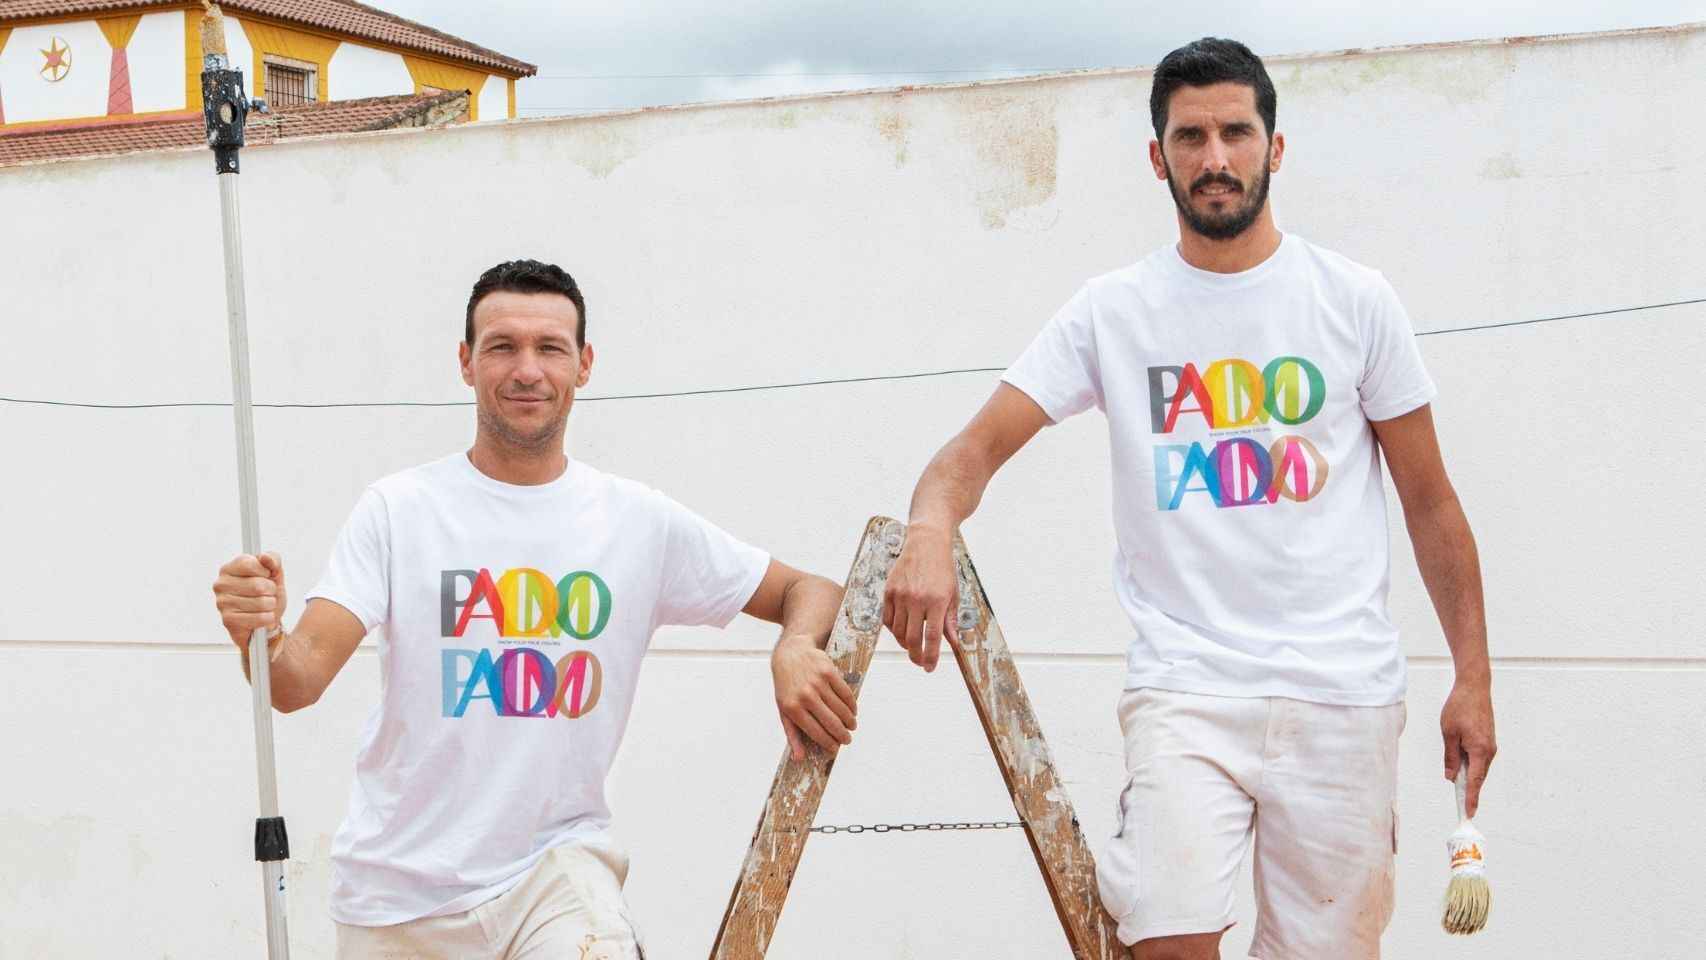 Palomo Spain se asocia con la plataforma a través de la creación de estas camisetas.